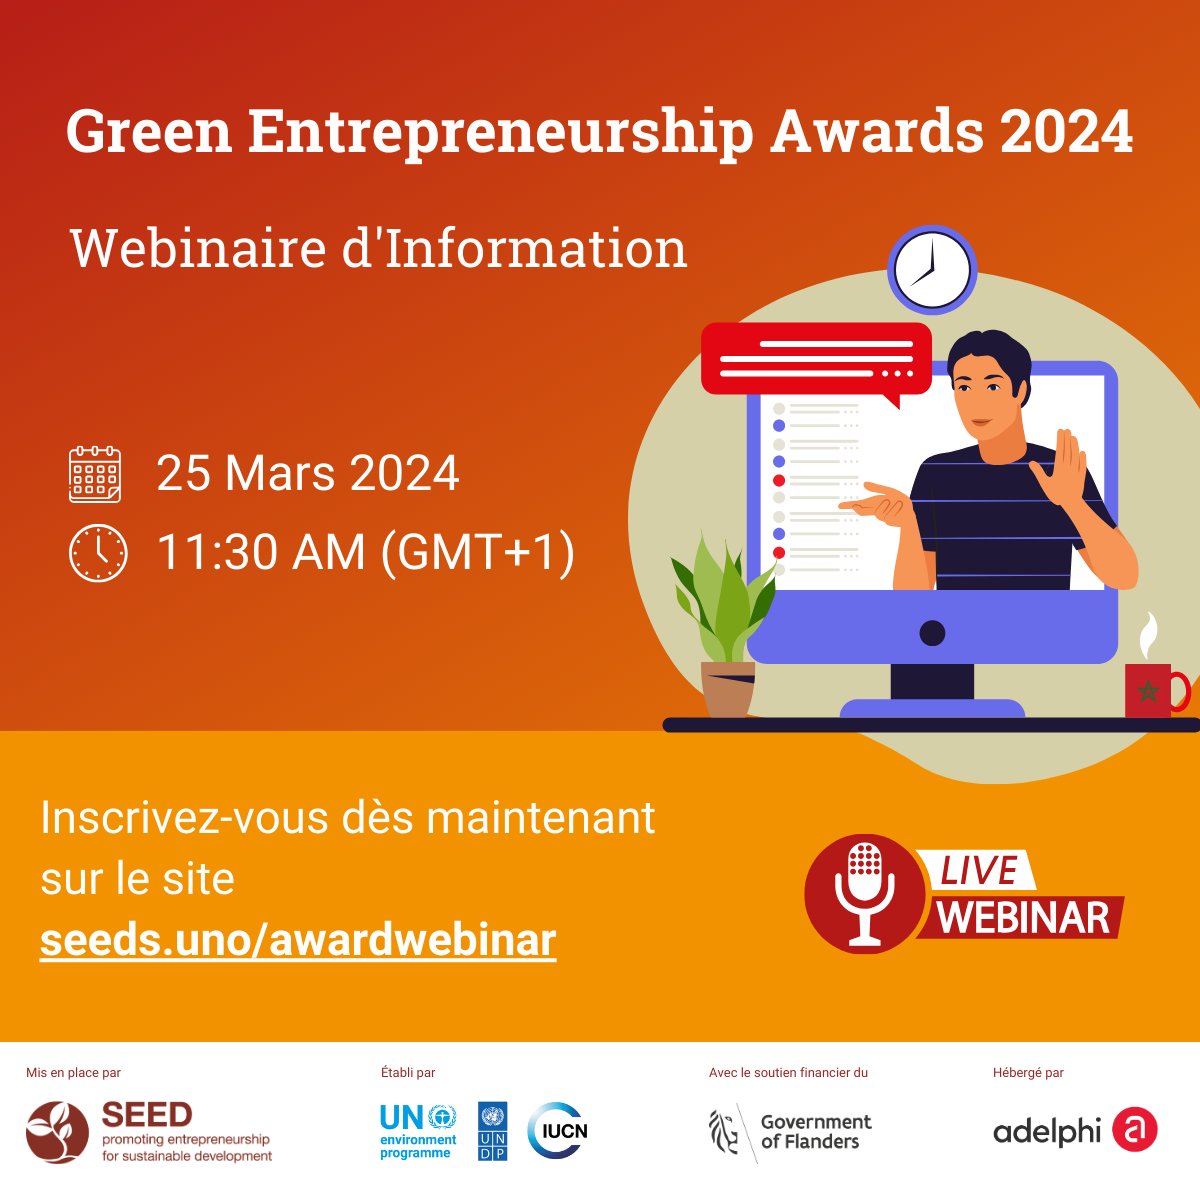 Aujourd'hui, SEED organise le « Green Enterpreneurship Awards – Webinaire d’information » 📅 Lundi 25 Mars 2024 🕤 10:30 AM (GMT+0) Dernière chance de s'inscrire au webinaire pour en savoir plus sur les Awards 2024 au #Maroc ! Inscrivez-vous ici 👉 seeds.uno/awardwebinar